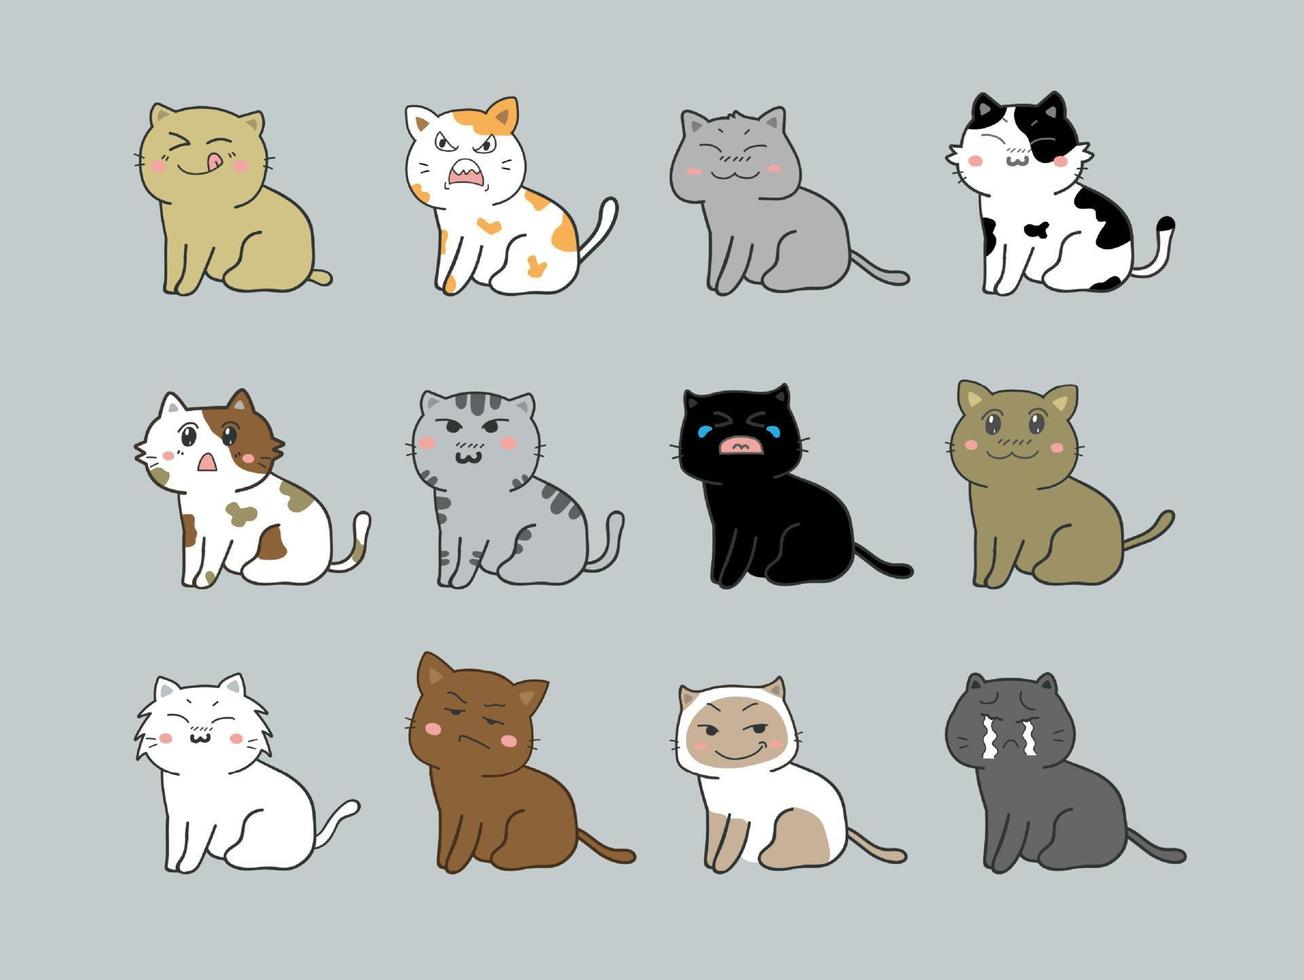 conjunto de ícones de personagem de desenho animado de gato vetor